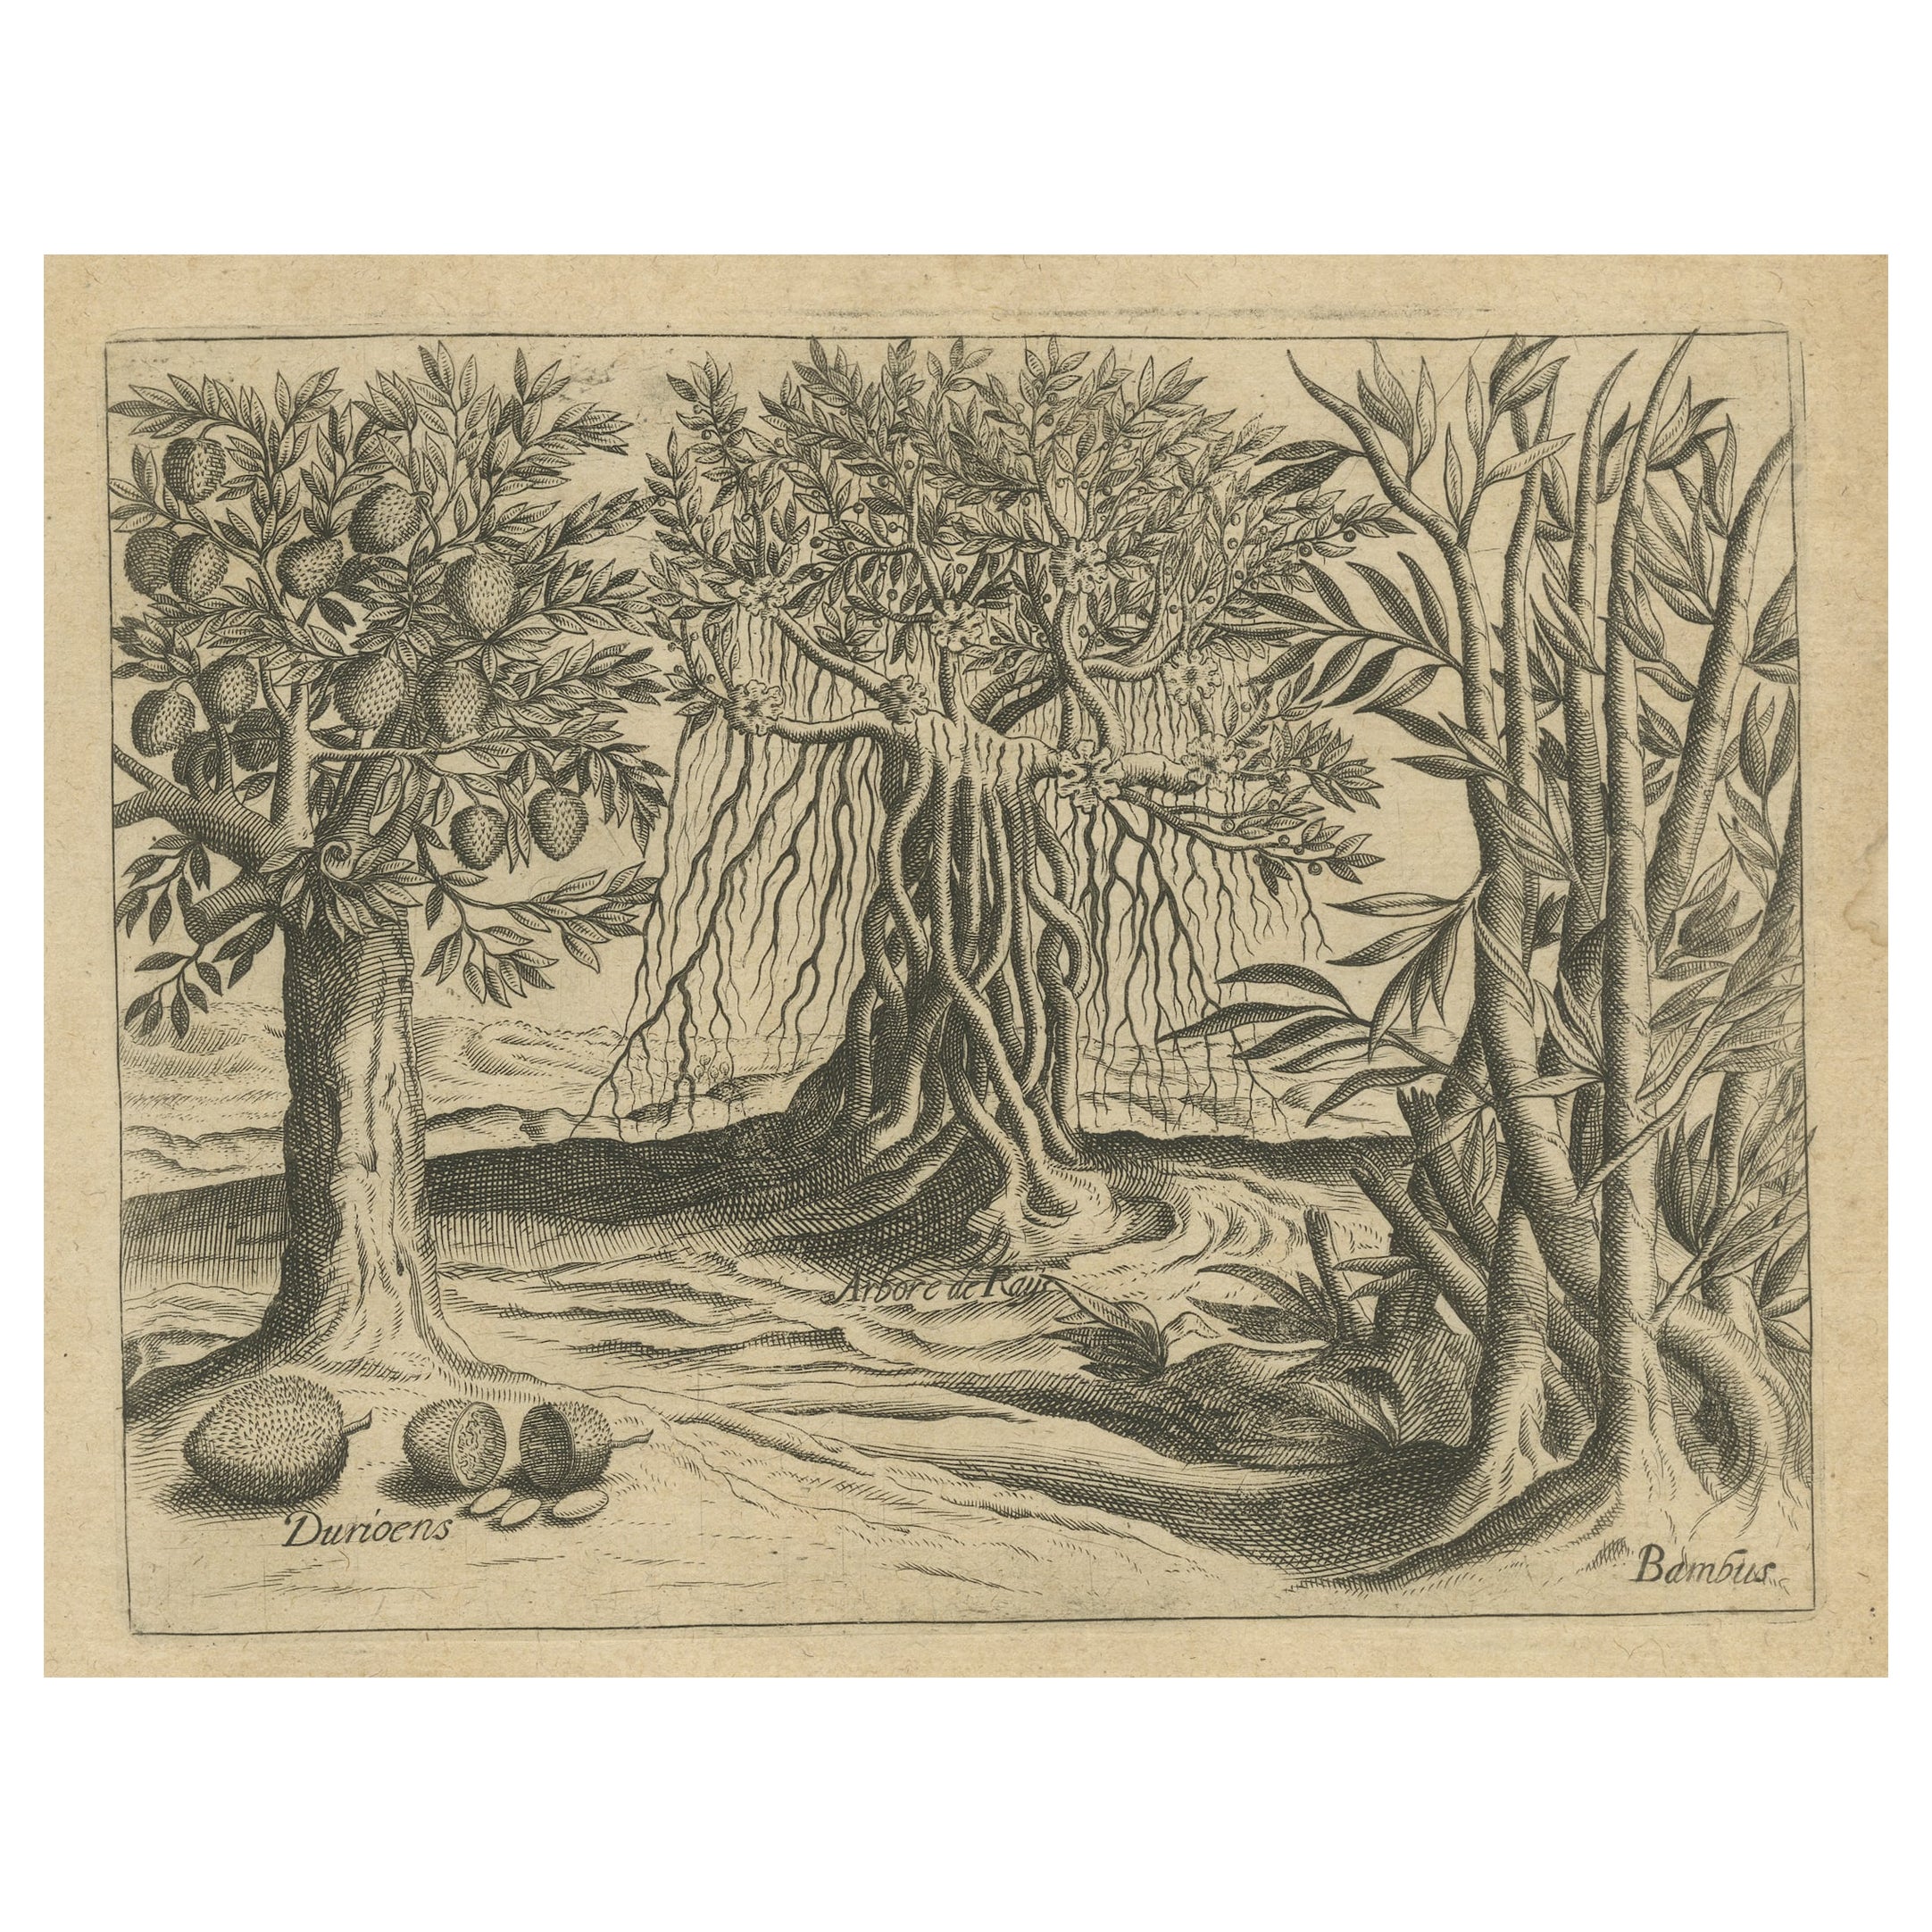 Marvels botaniques de l'Inde : bambou et durian dans la gravure en cuivre 1601 de De Bry